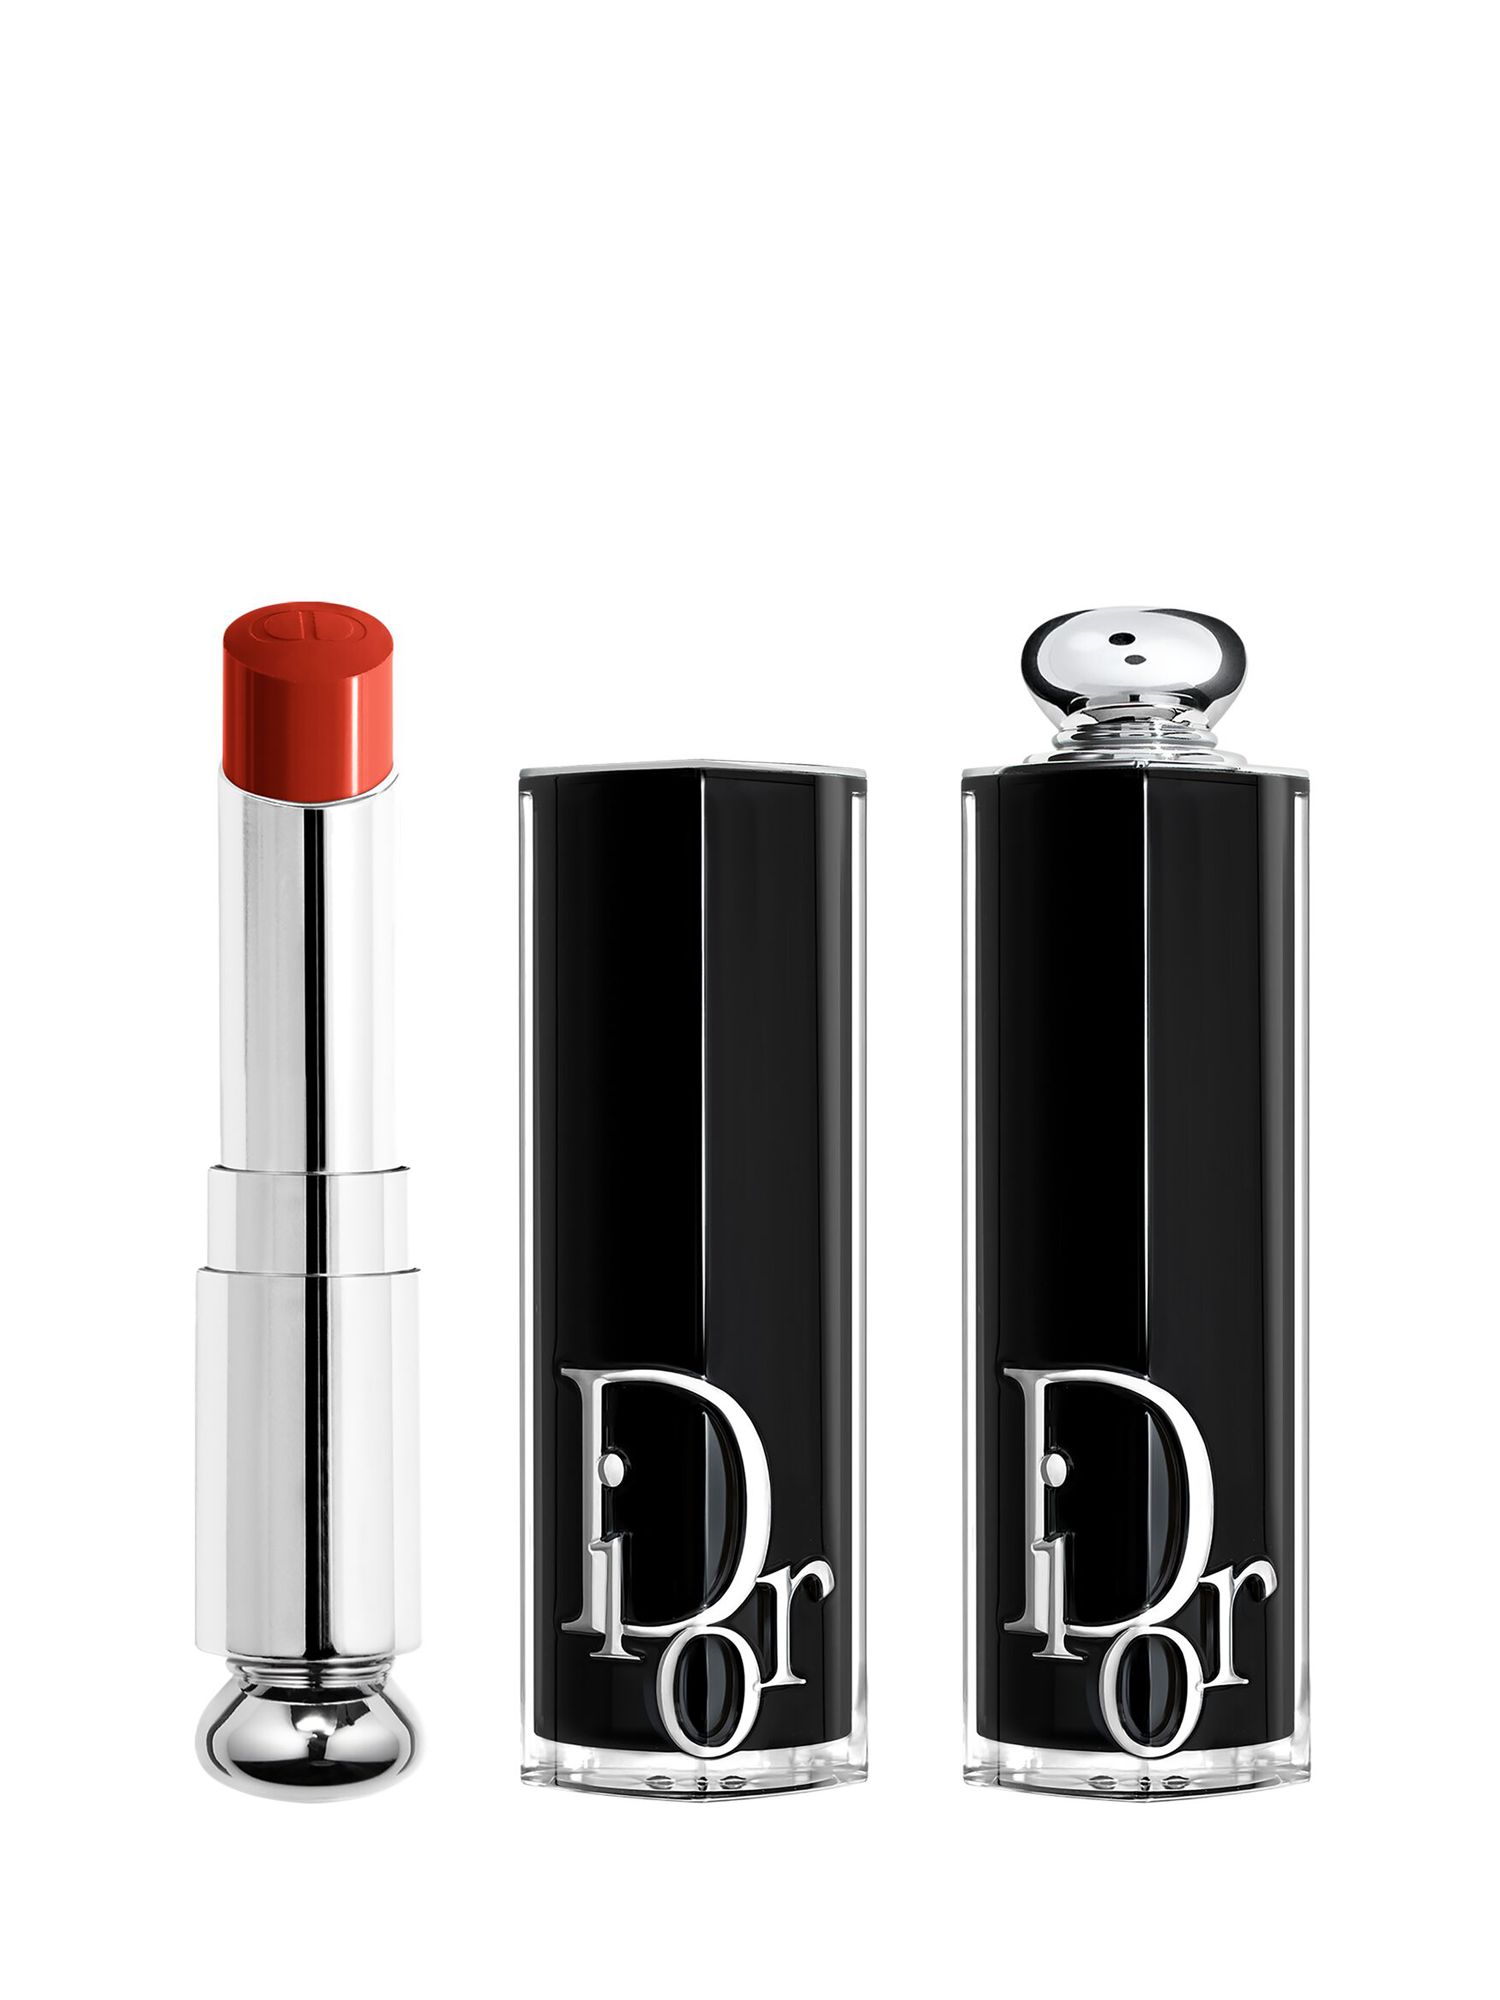 DIOR Addict Shine Lipstick Refill, 463 Dior Ribbon